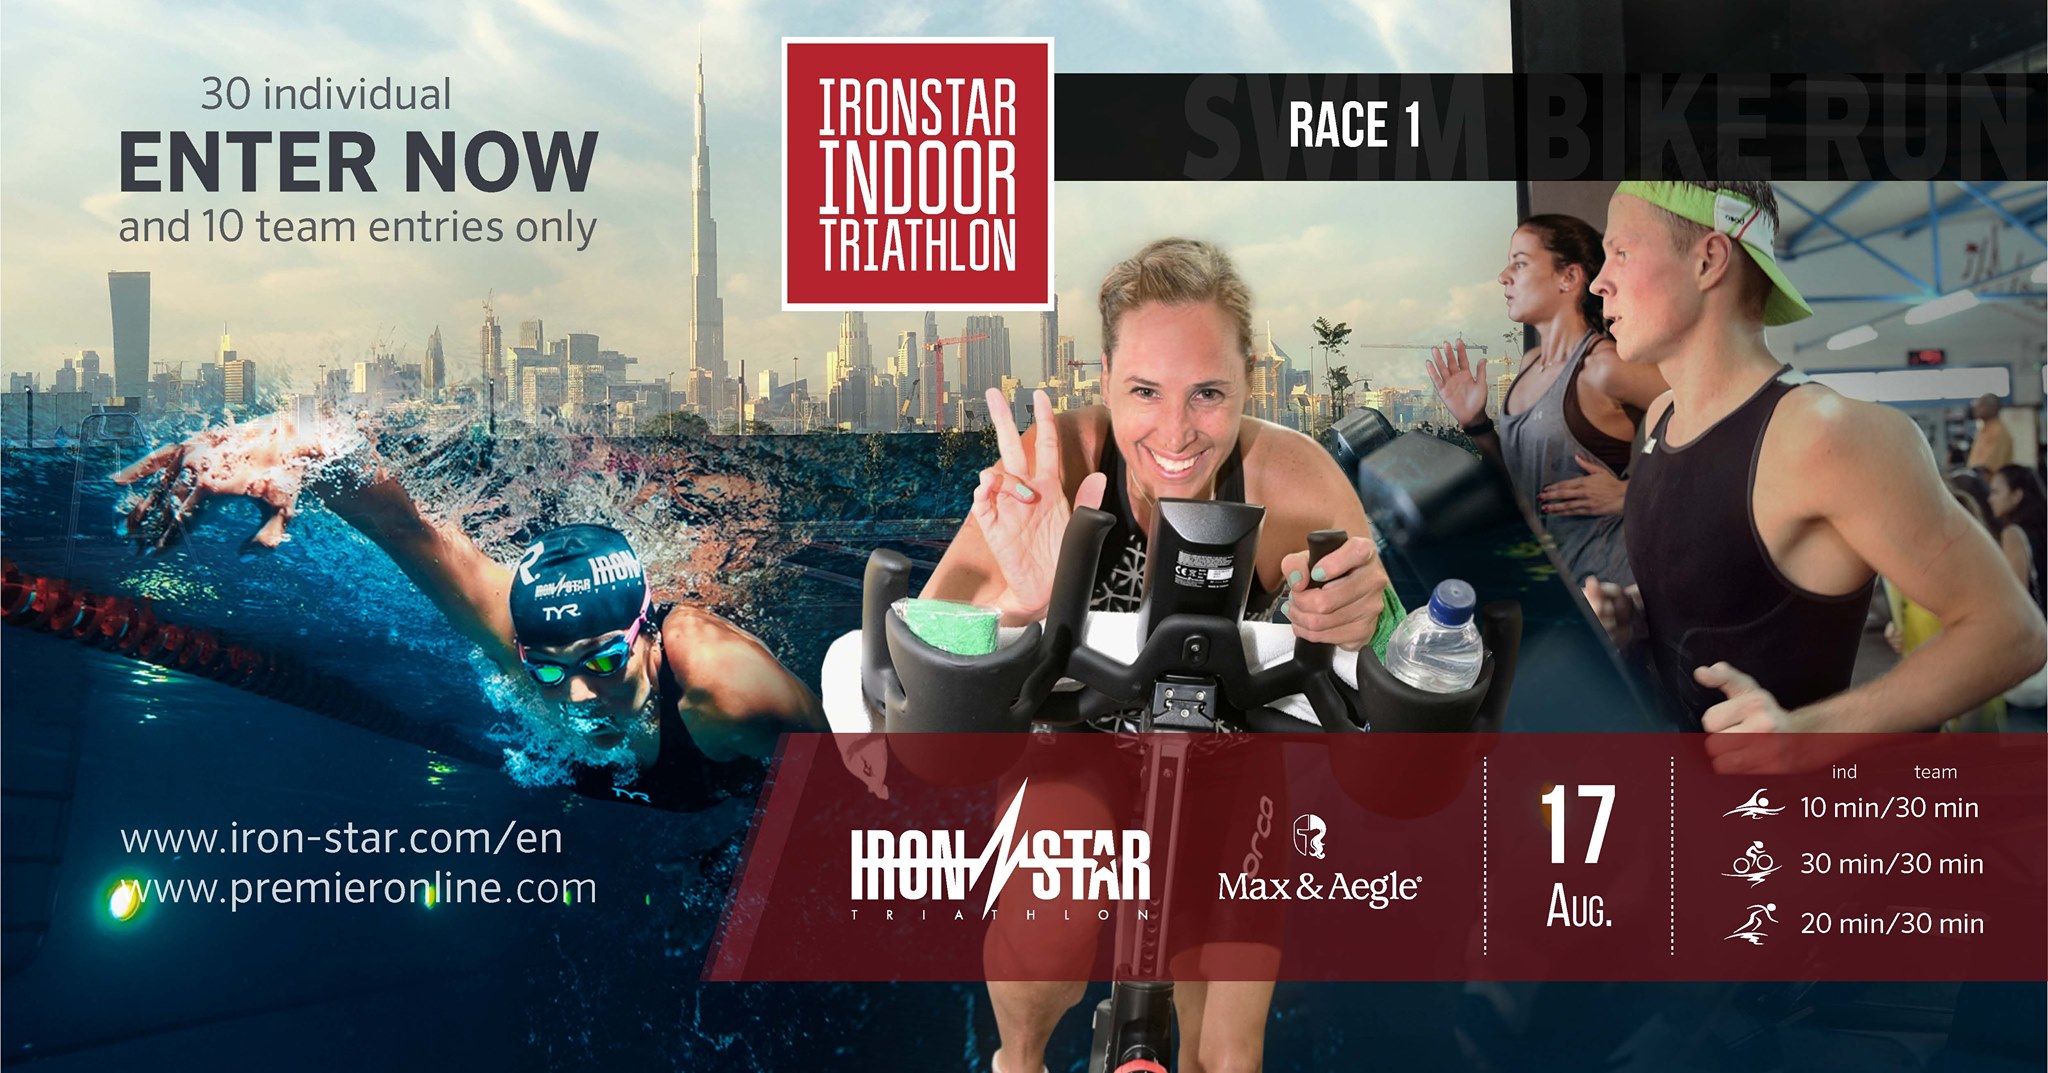 Ironstar Indoor Triathlon 2019 - Coming Soon in UAE